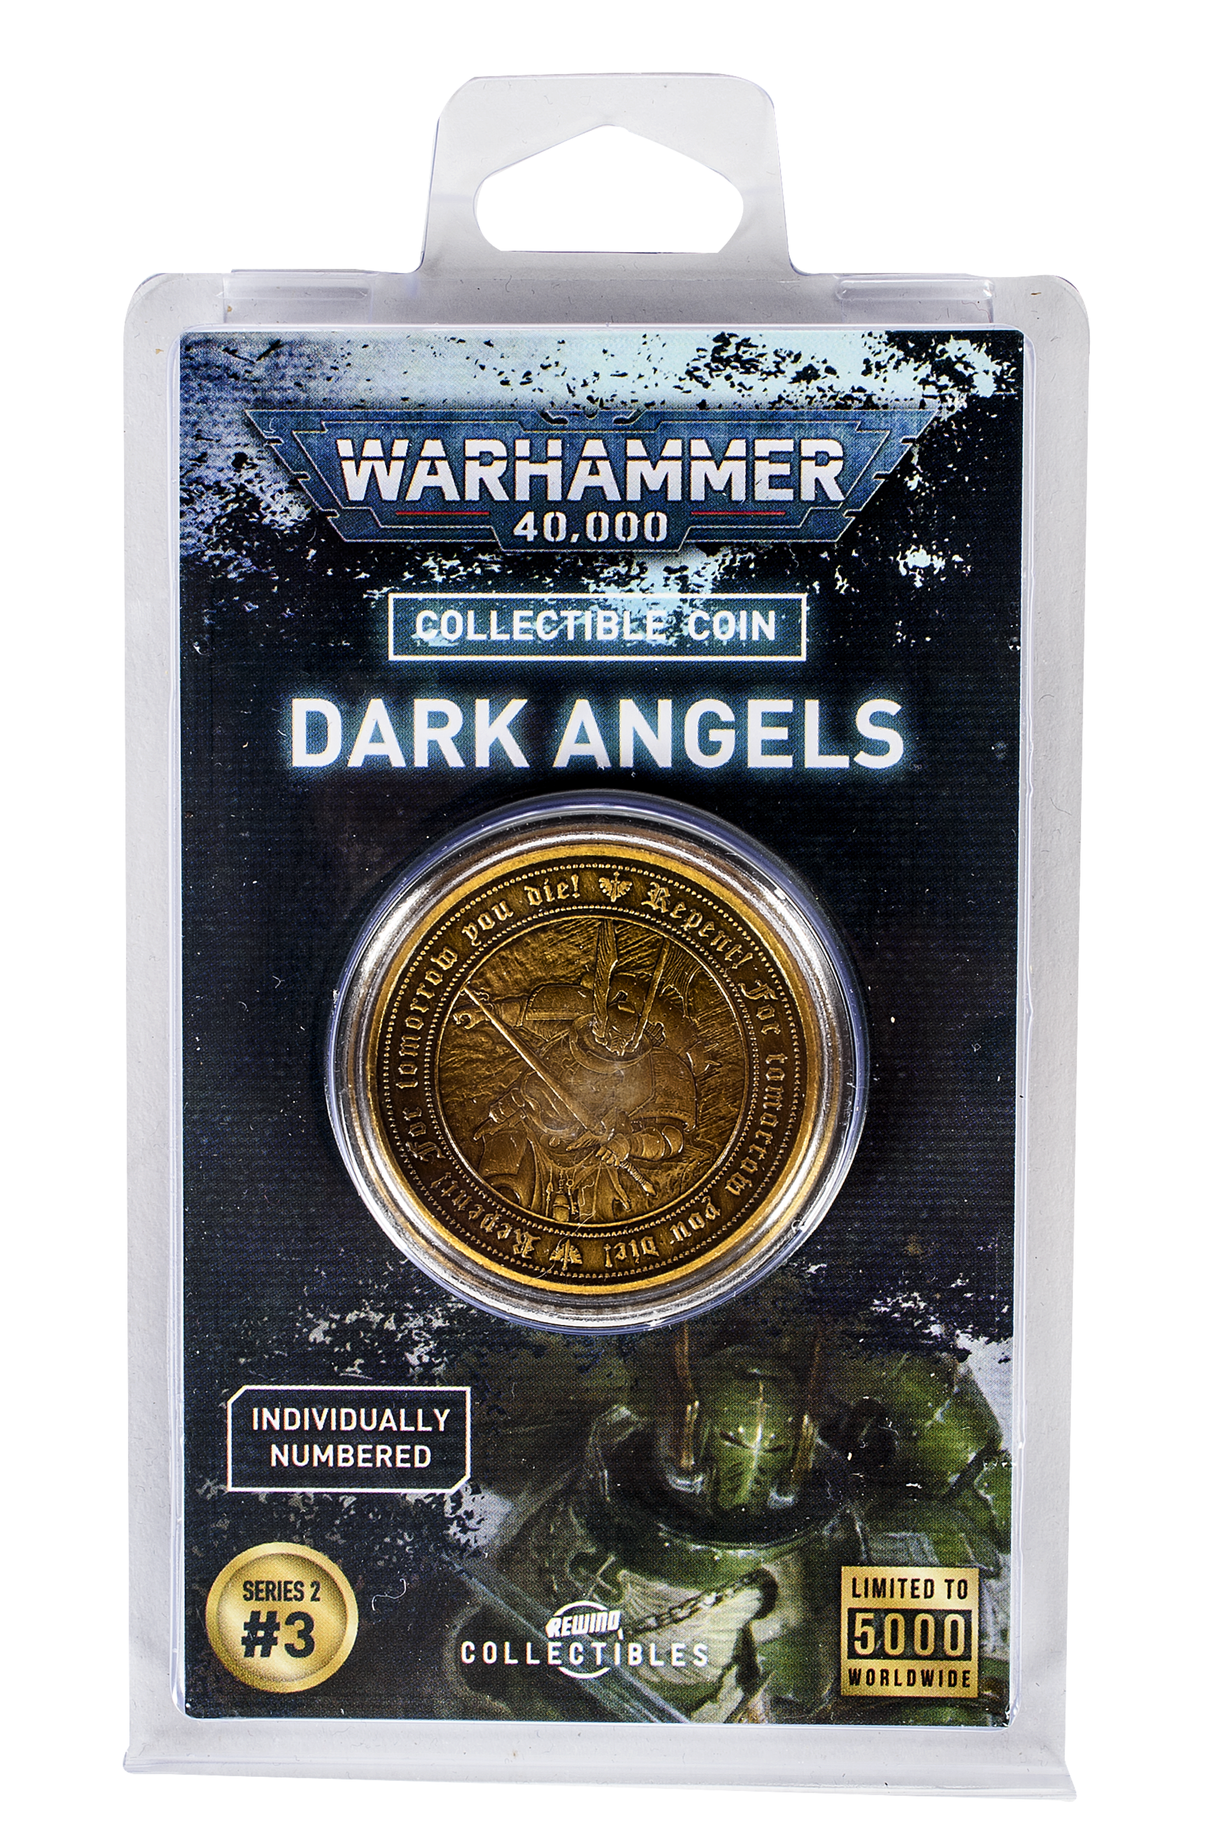 Warhammer 40,000: Dark Angels Coin